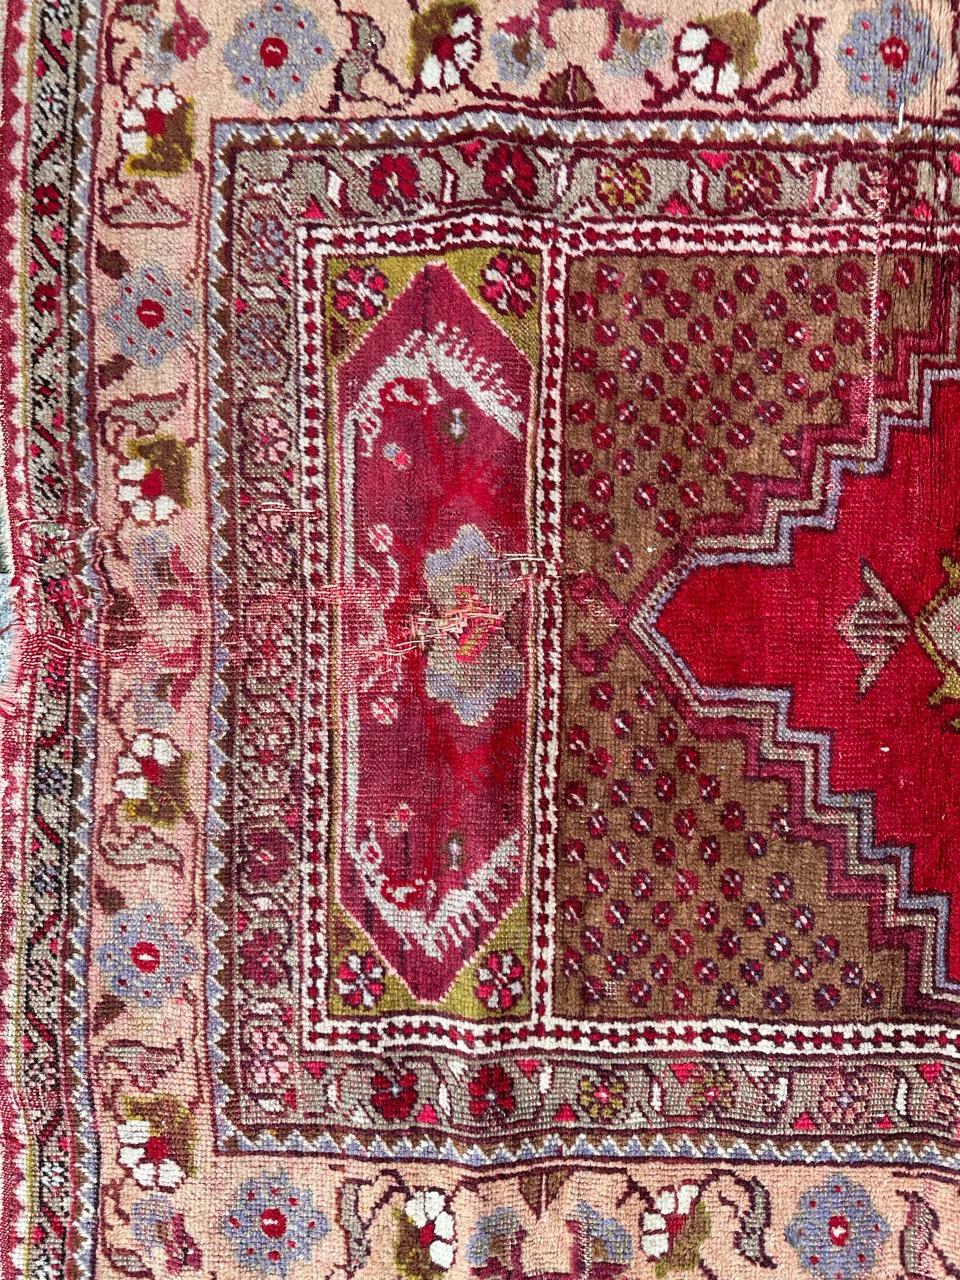 Hübscher antiker türkisch-anatolischer Teppich mit schönem geometrischem Muster und schönen Farben mit Rot, Grün, Grau und hellem Orange, komplett handgeknüpft mit Wolle auf Wollfond 

✨✨✨
